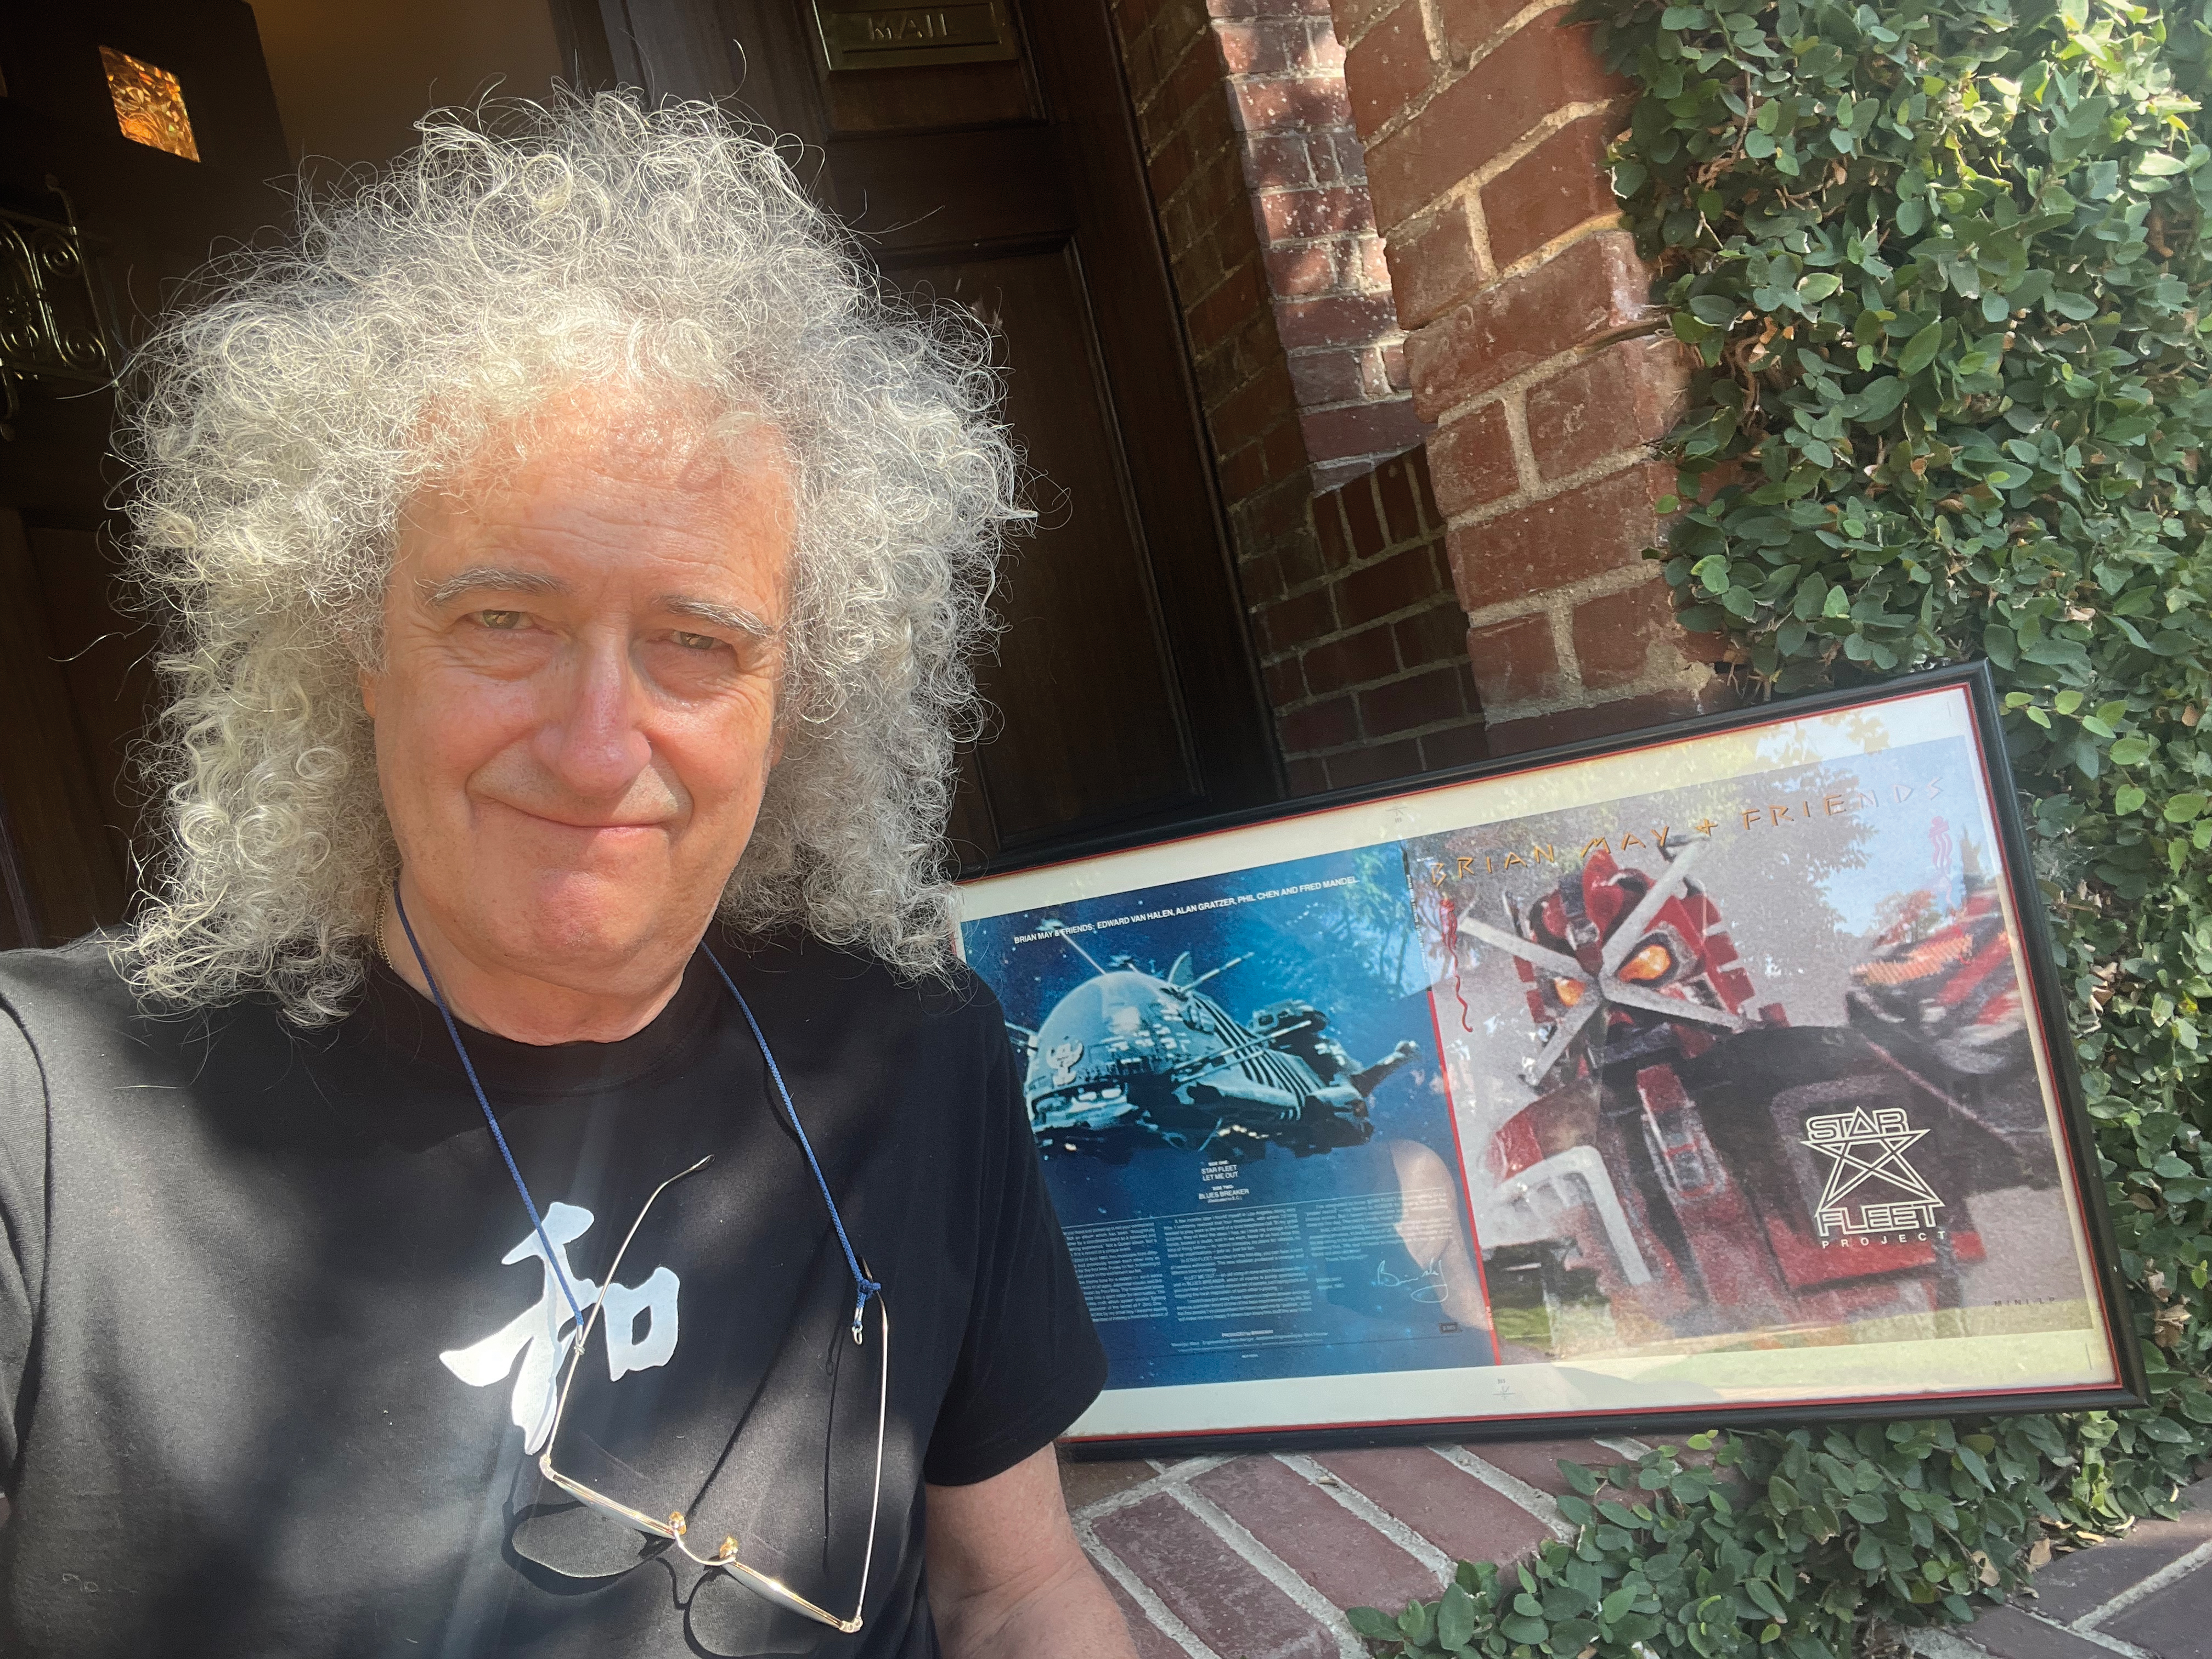 Brian May – Este es el Dr. May – habla sobre la reedición de «Project Star Fleet», Eddie Van Halen, Queen